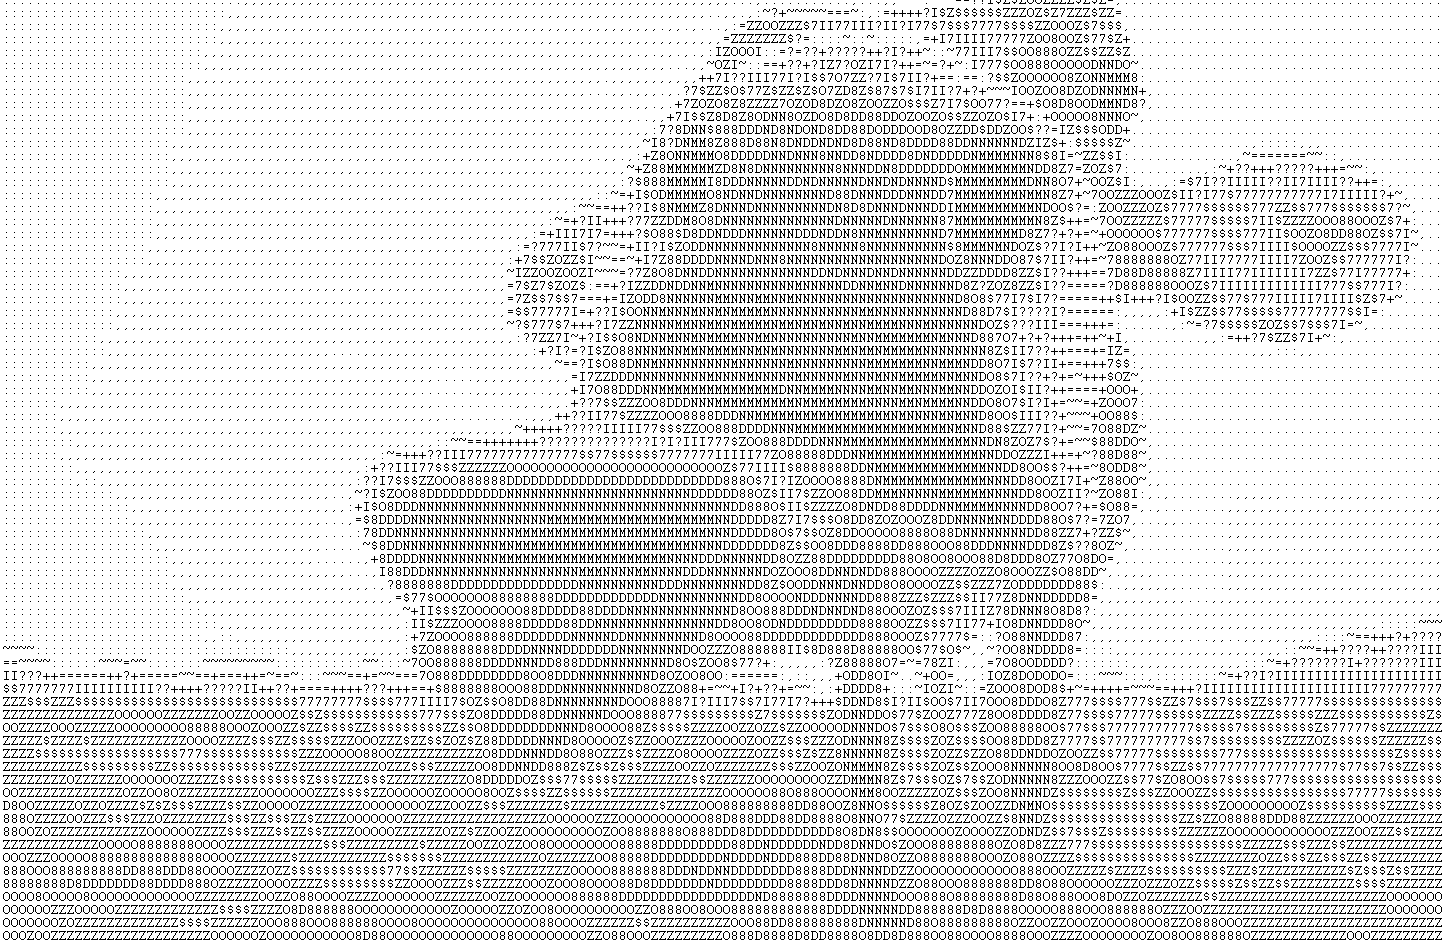 ASCII-Art-Nachbildung eines Fotos. Dafür habe ich den Webdienst http://www.glassgiant.com/ verwendet und den Text anschließend in einem Texteditor eingefügt und einen Screenshot erzeugt.